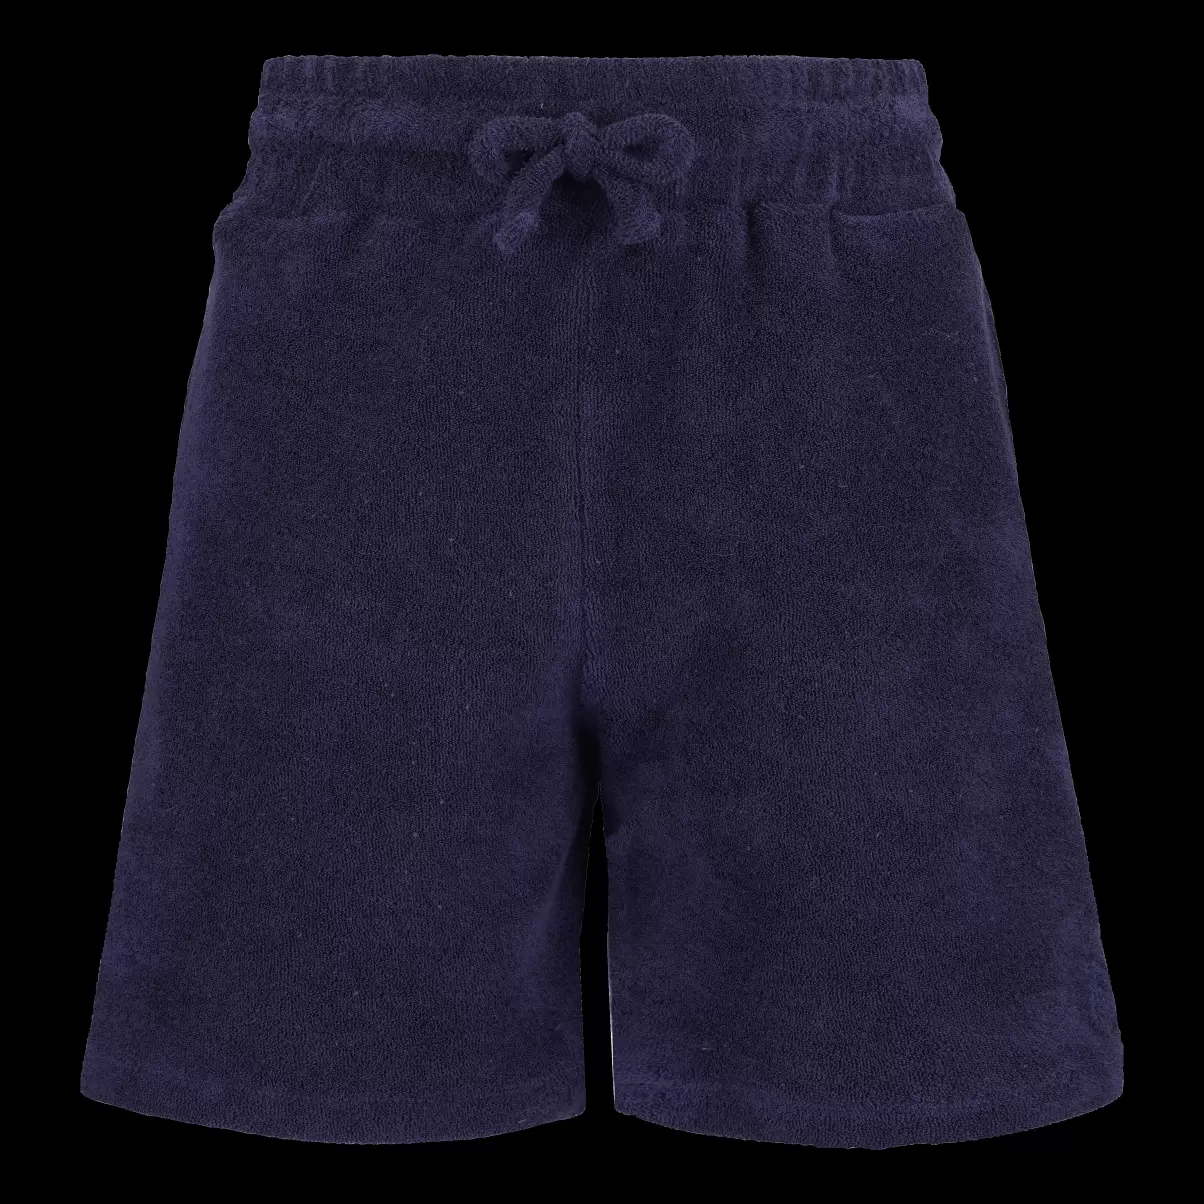 Marineblau / Blau Solid Bermudashorts Für Jungen Vilebrequin Produktqualitätsmanagement Shorts Jungen